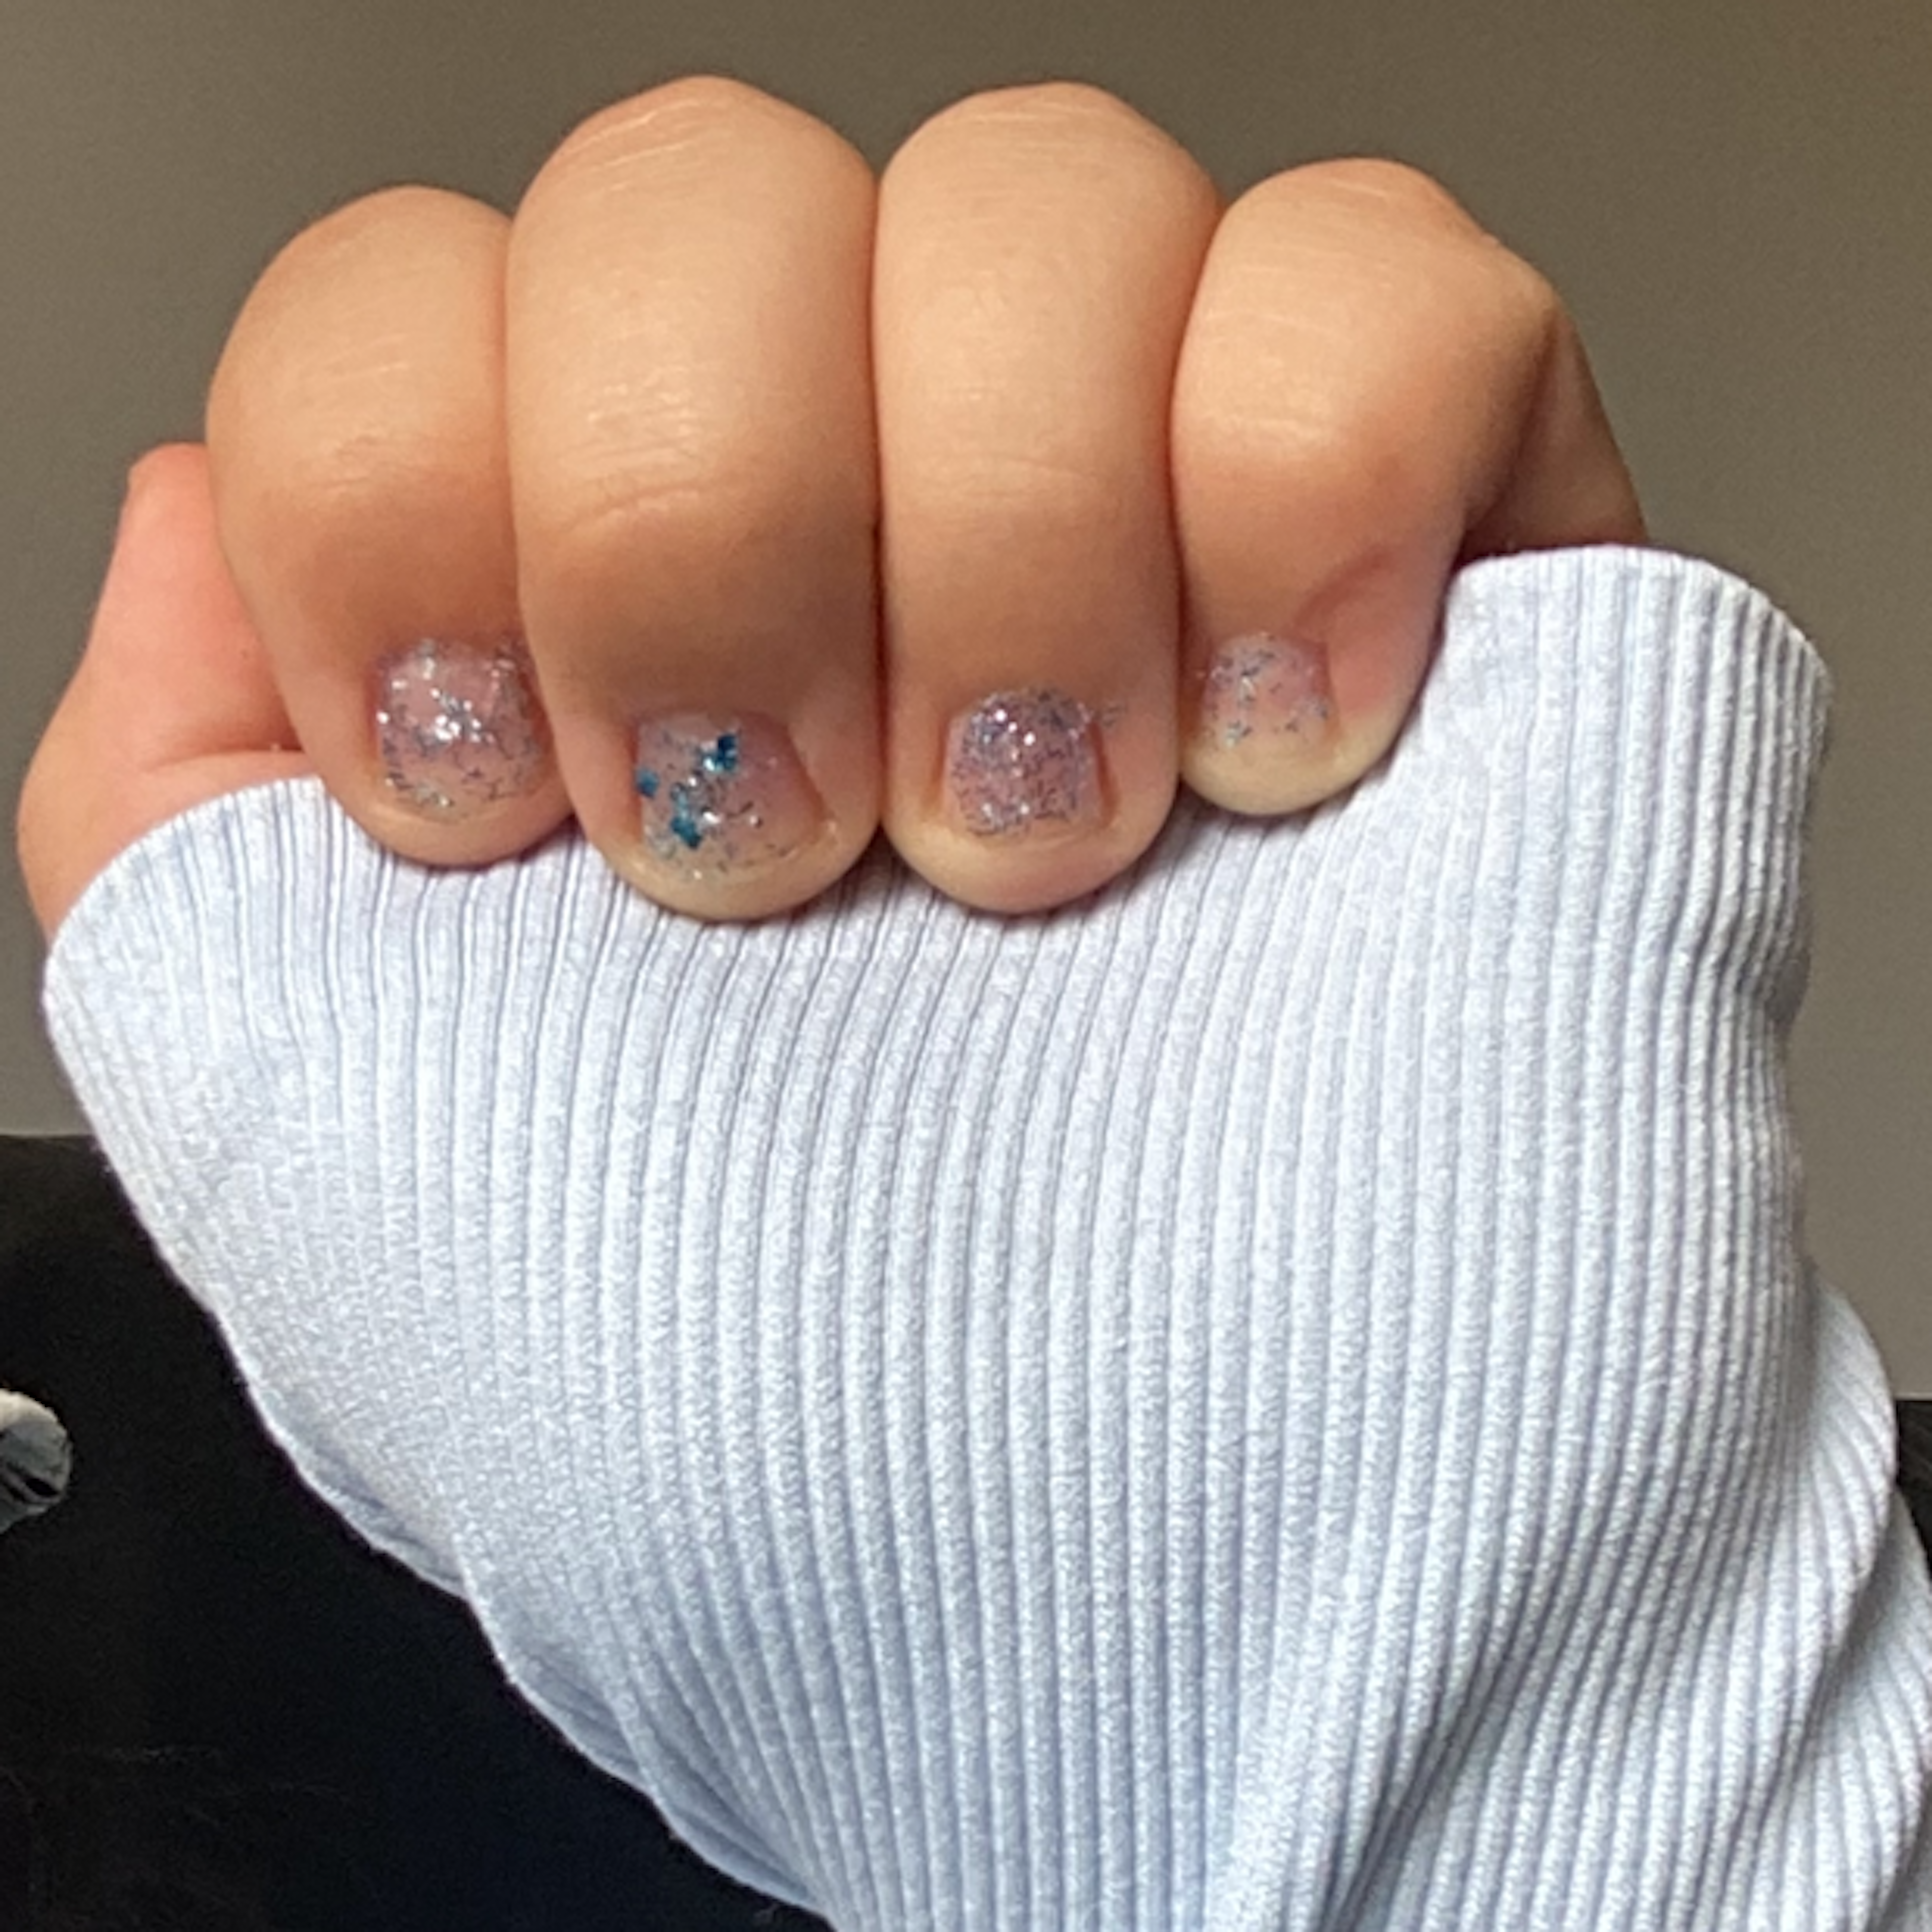 My Nails At Xmas